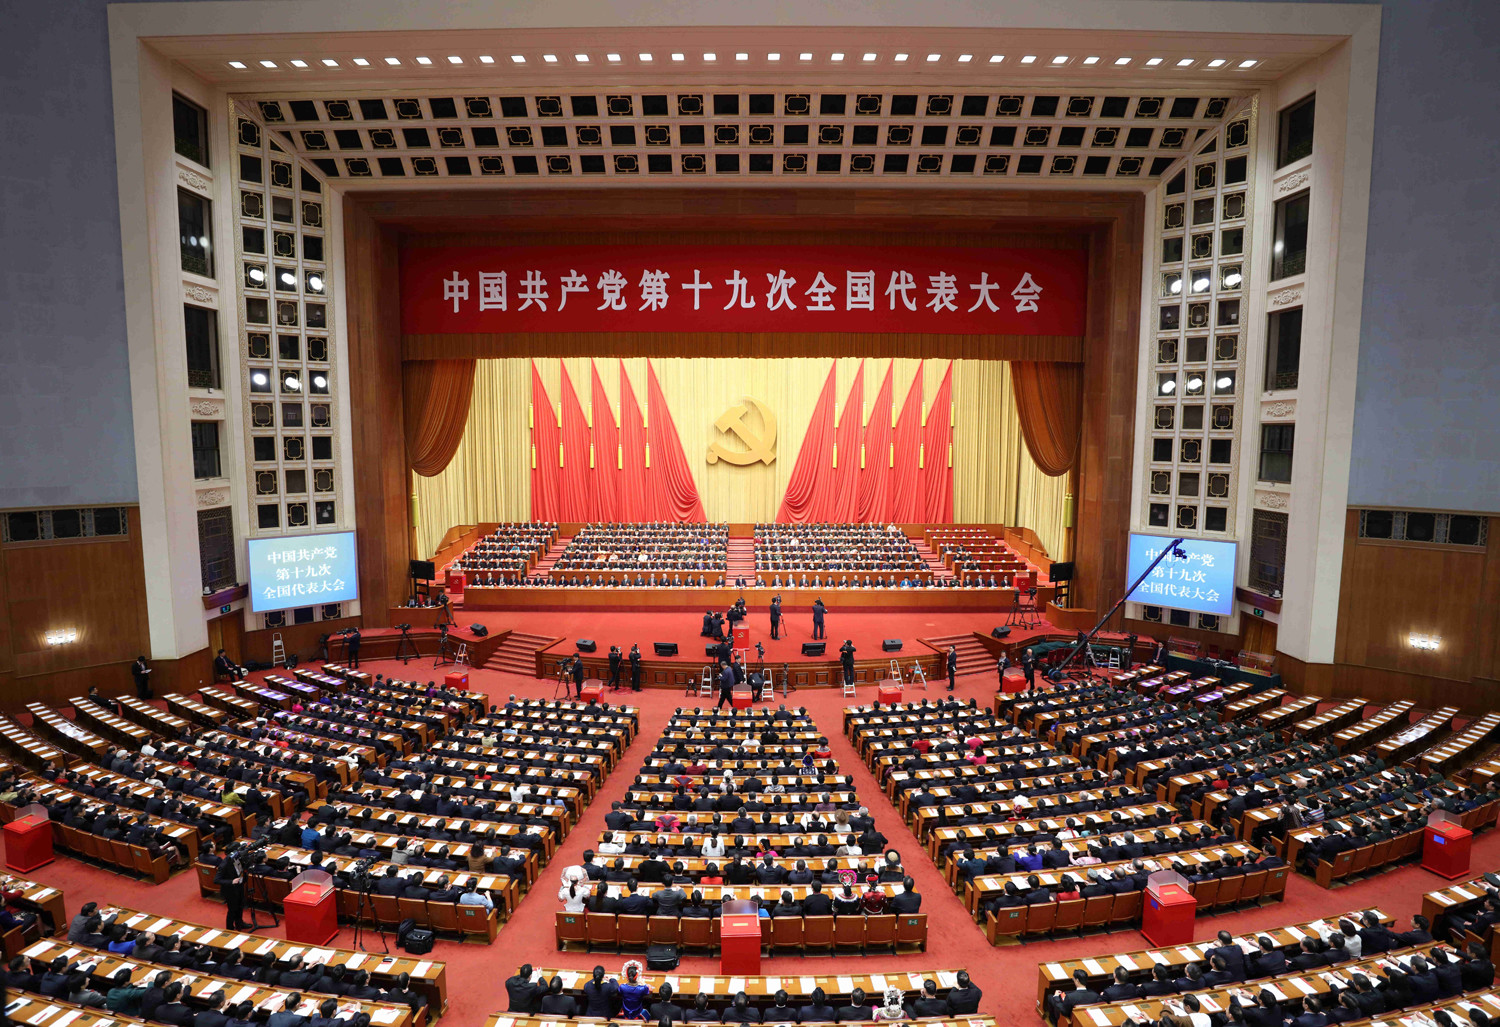 Депутат от КПРФ Сергей Гаврилов: «Компартия Китая объединяет миллионы активных граждан в решении задач развития и единства»